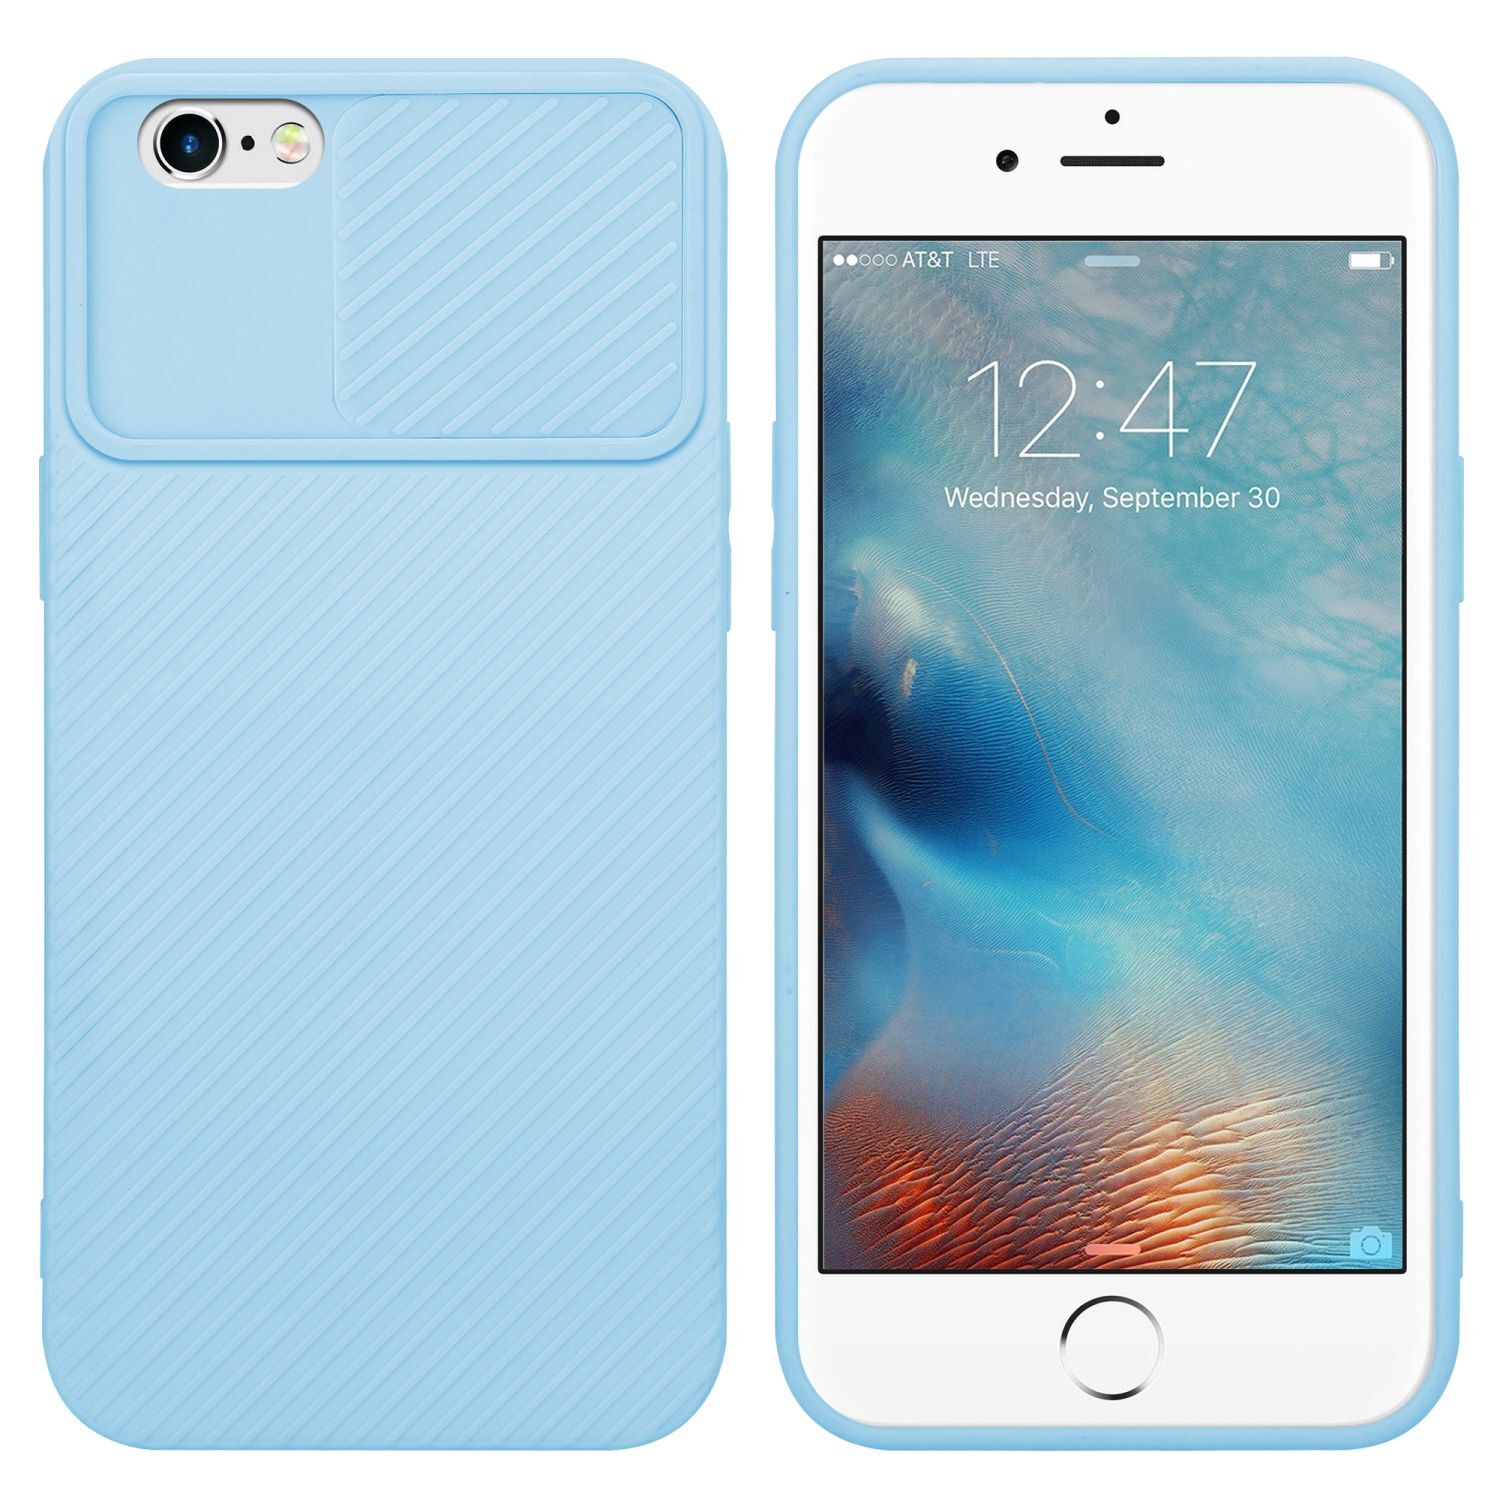 iPhone 6 / 6S silikondeksel cover (blå) - Elkjøp